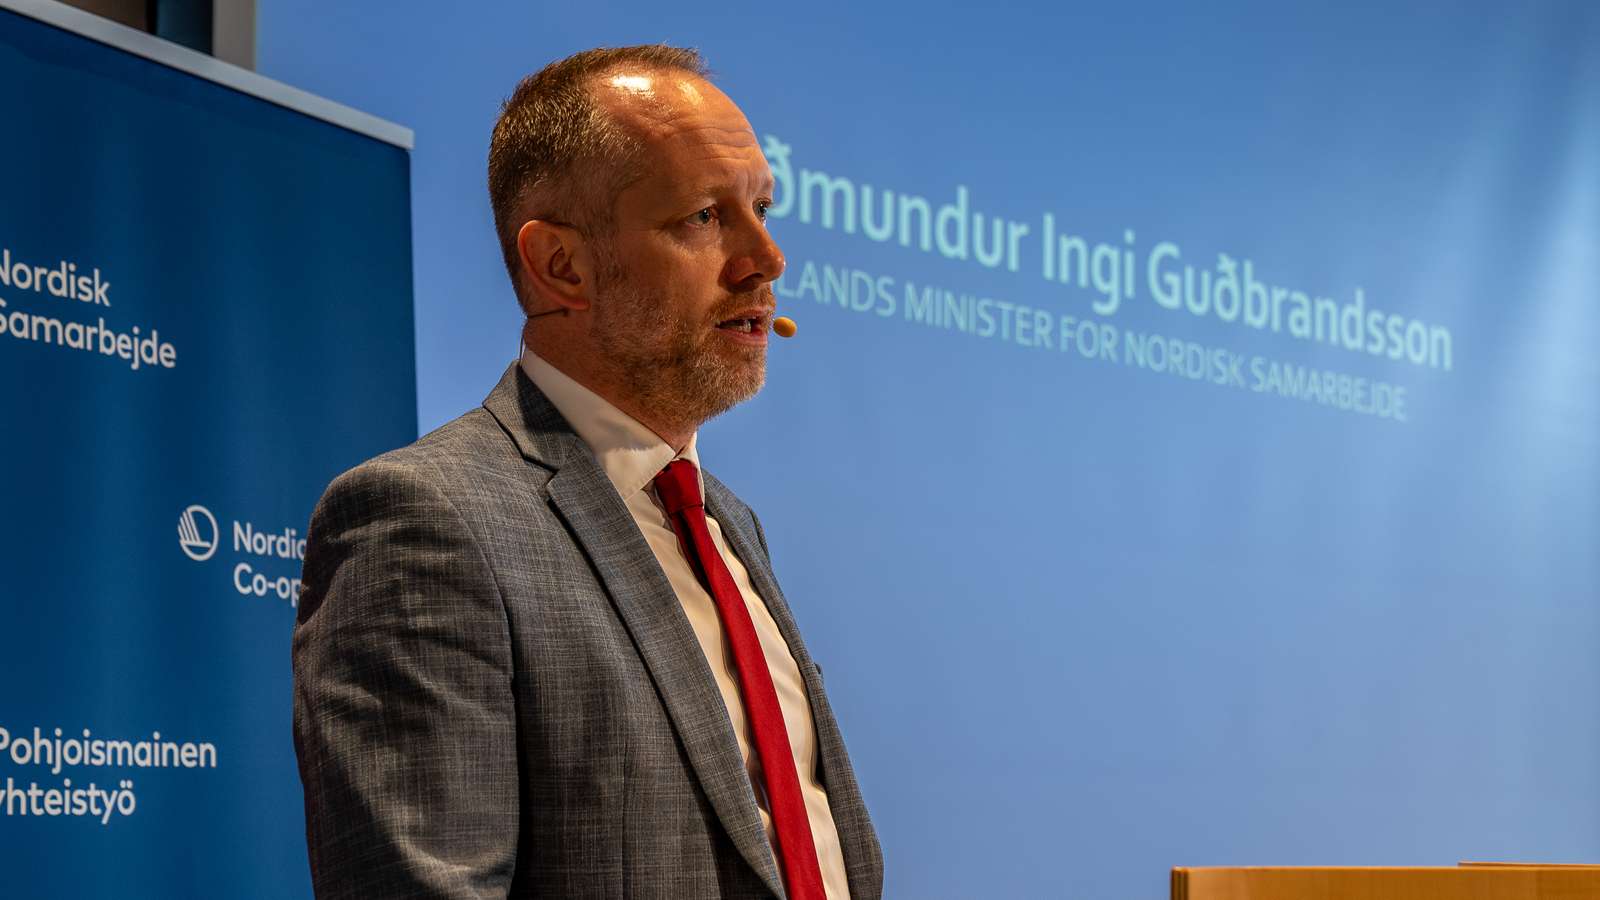 Guðmundur Ingi Guðbrandsson